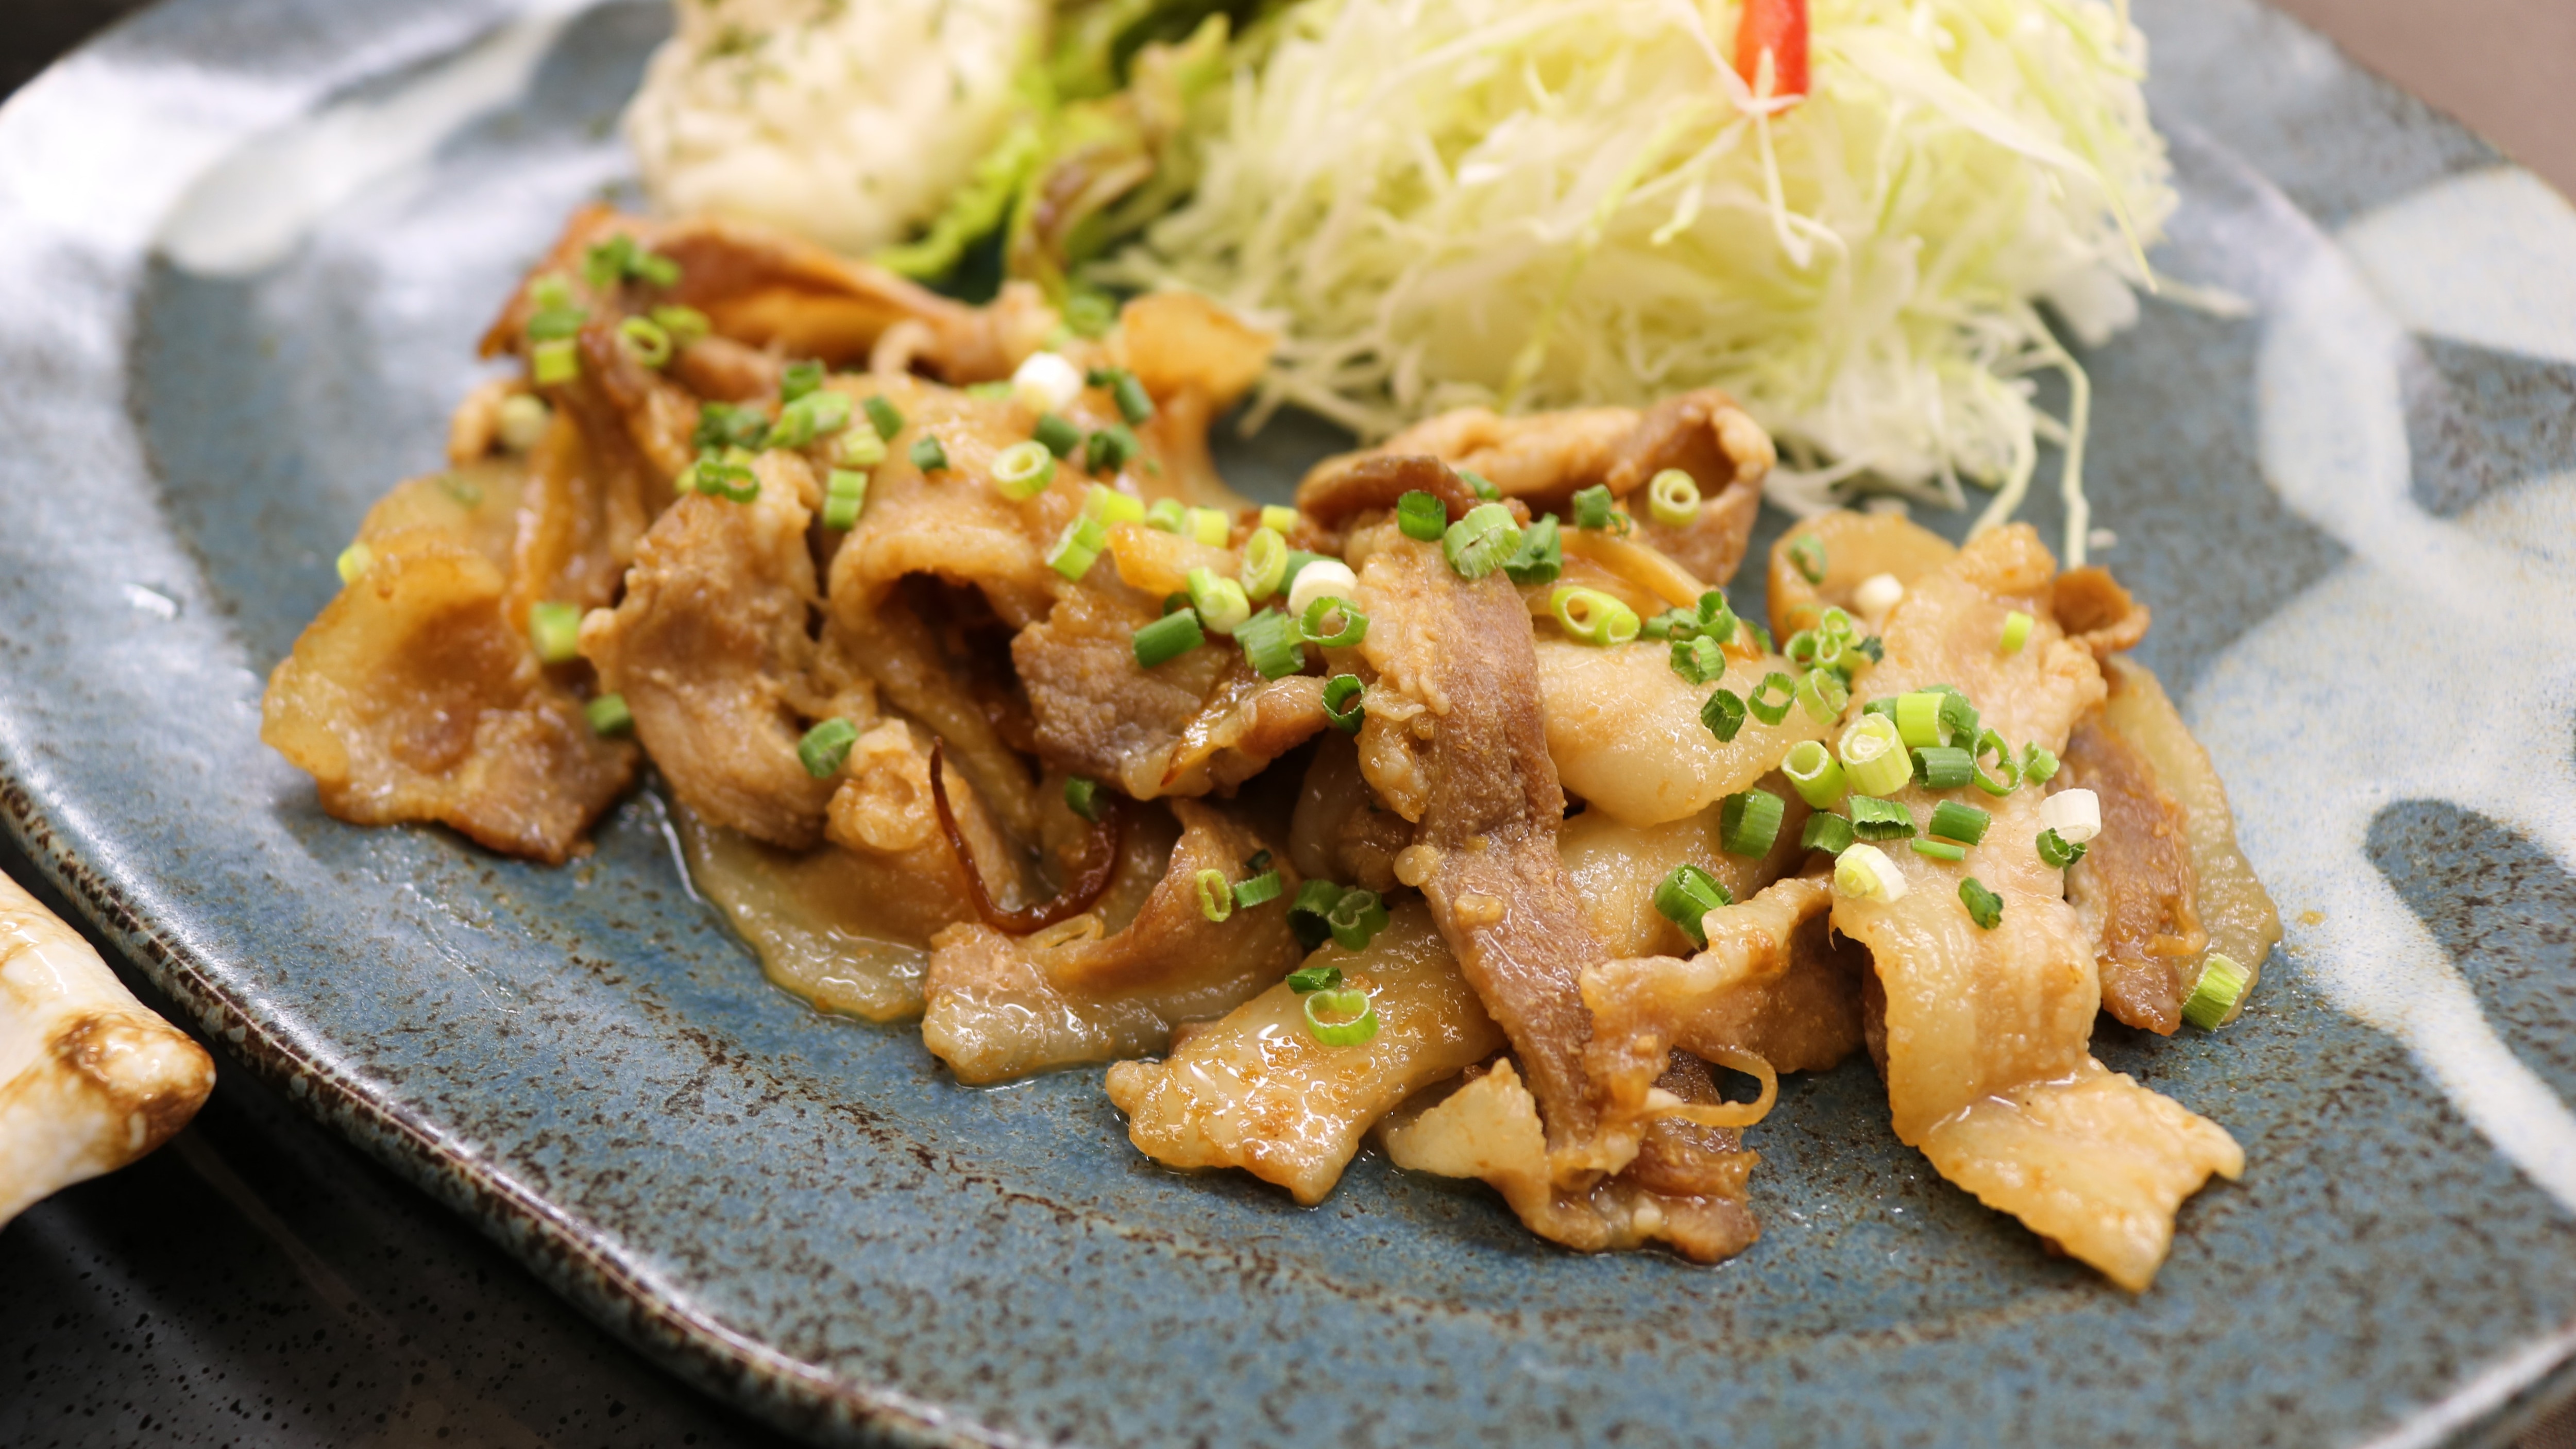 Restoran makan malam "Hanabatei" Makanan set yang direkomendasikan "Kurobuta ginger grilled"